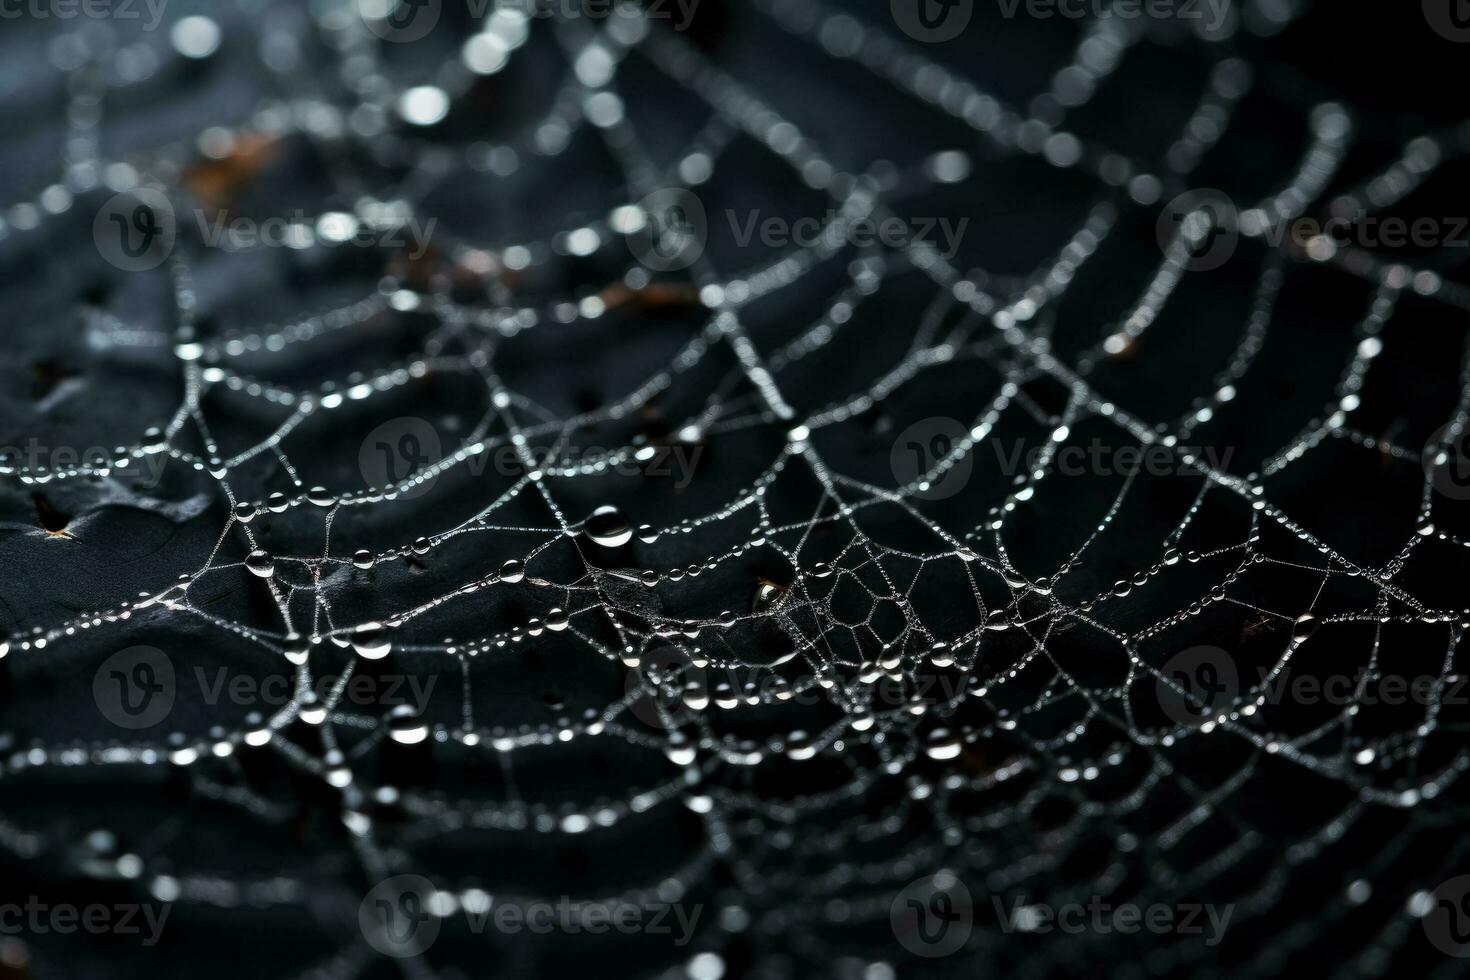 intrincado prata aranha teias delicadamente entrelaçados fundição sombras em uma ninhada carvão fundo foto